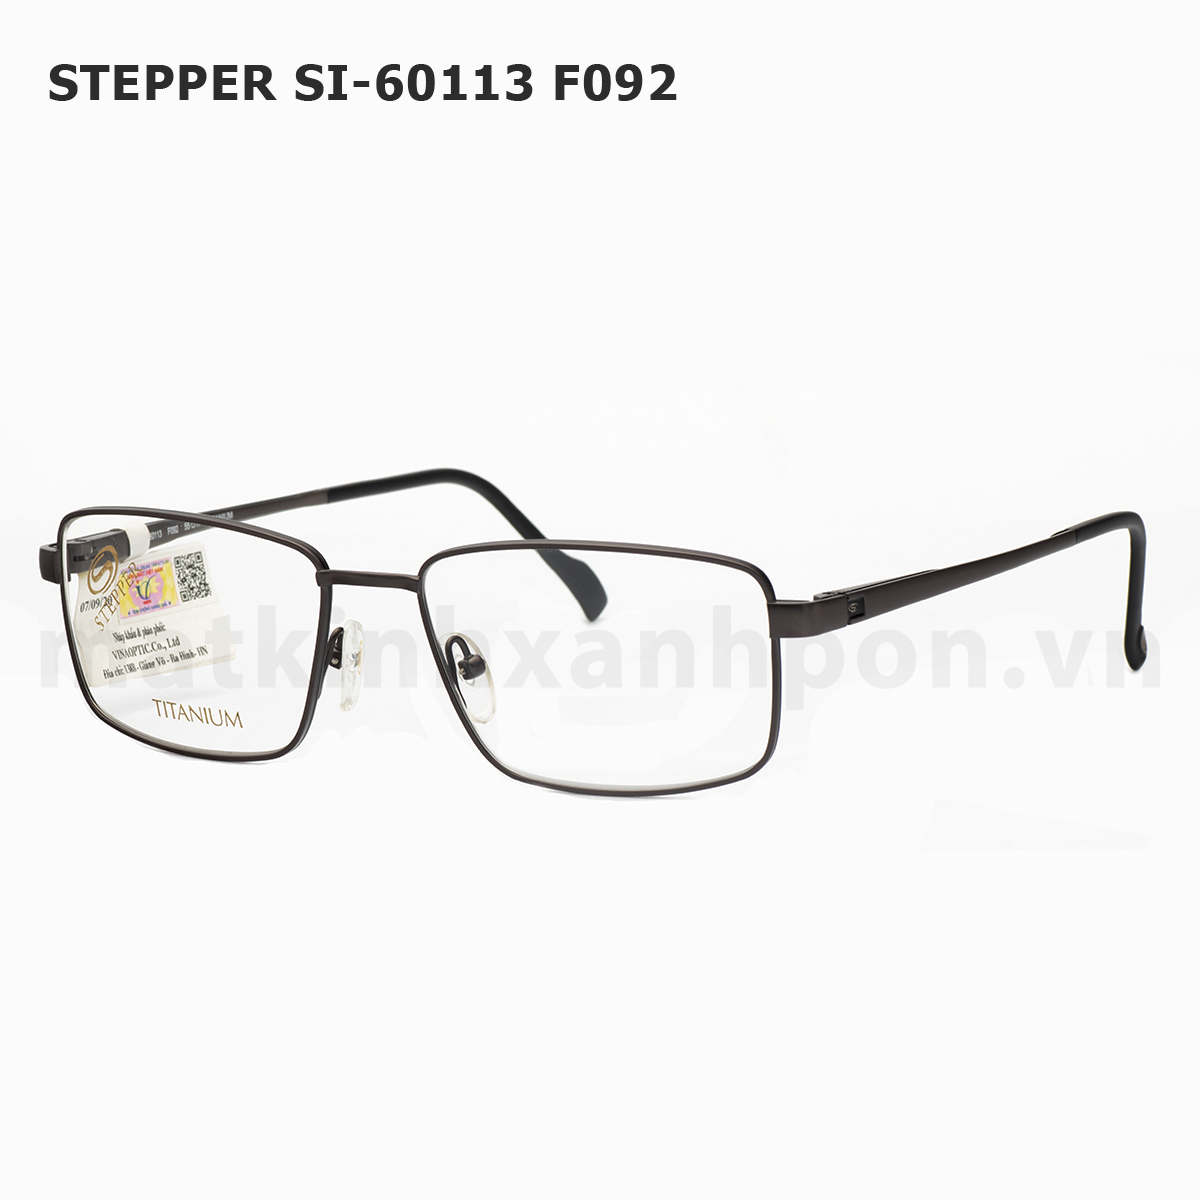 Stepper SI-60113 F092